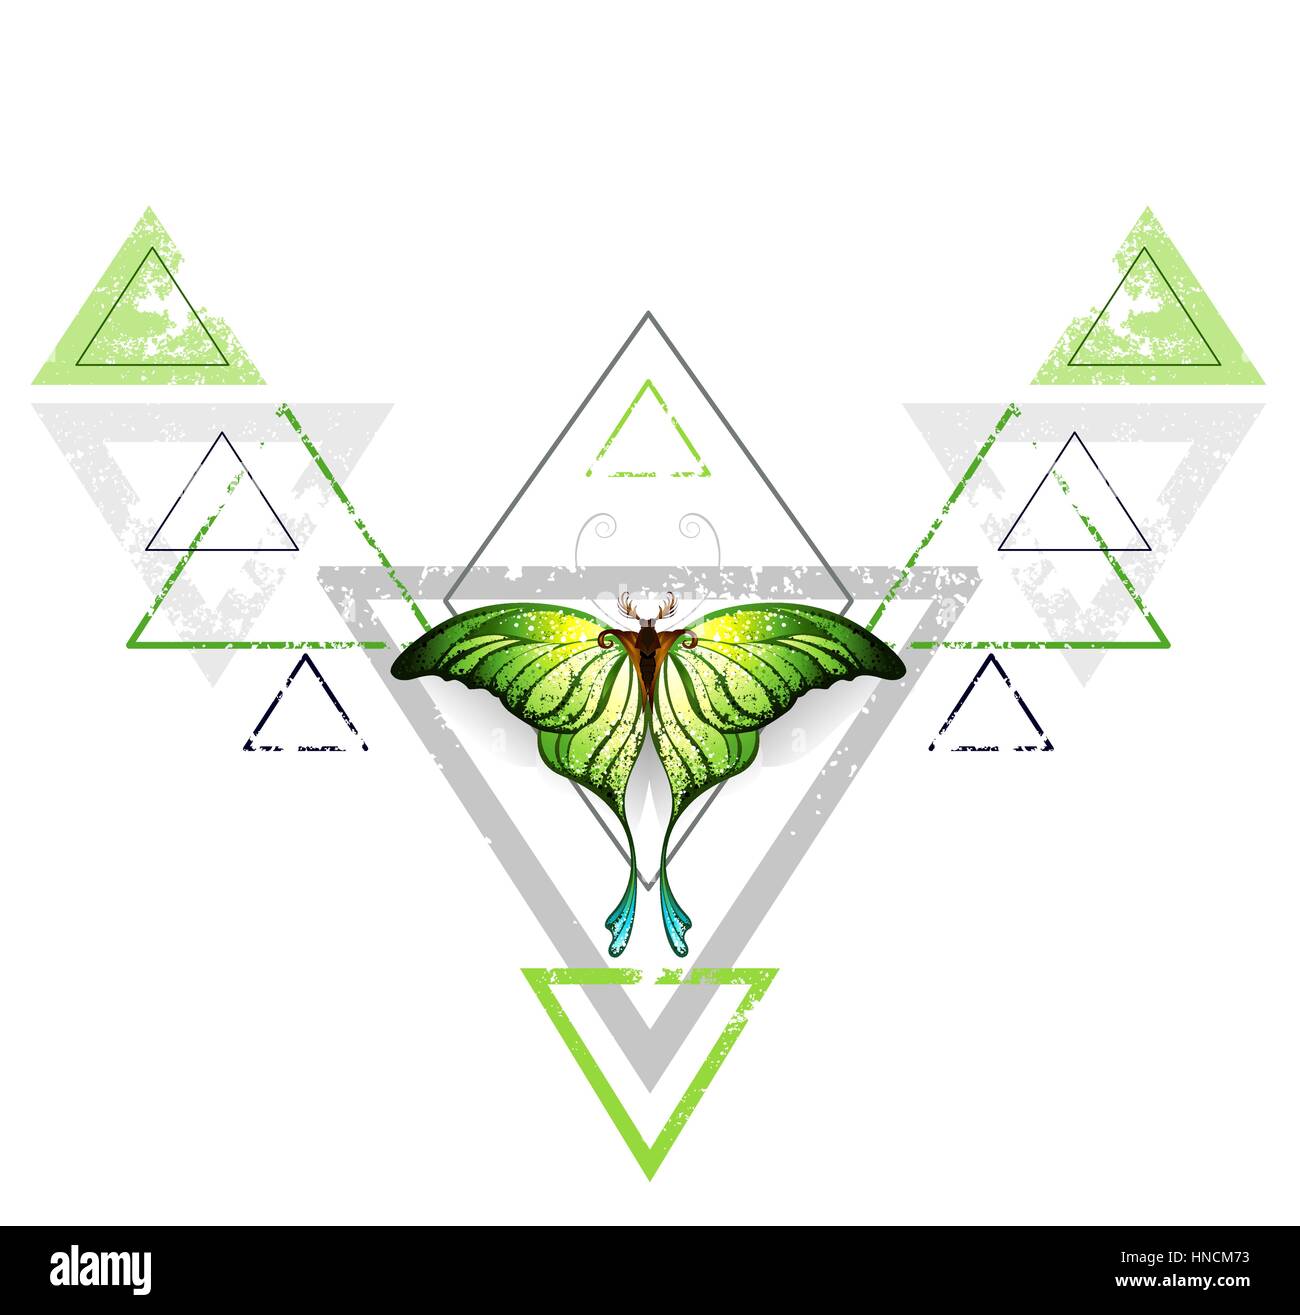 Geometrische, symmetrisches Muster mit grauen und grünen Dreieck, verziert mit Grün exotischer Schmetterling auf einem weißen Hintergrund. Tattoo-Stil. Grün. Tren Stock Vektor